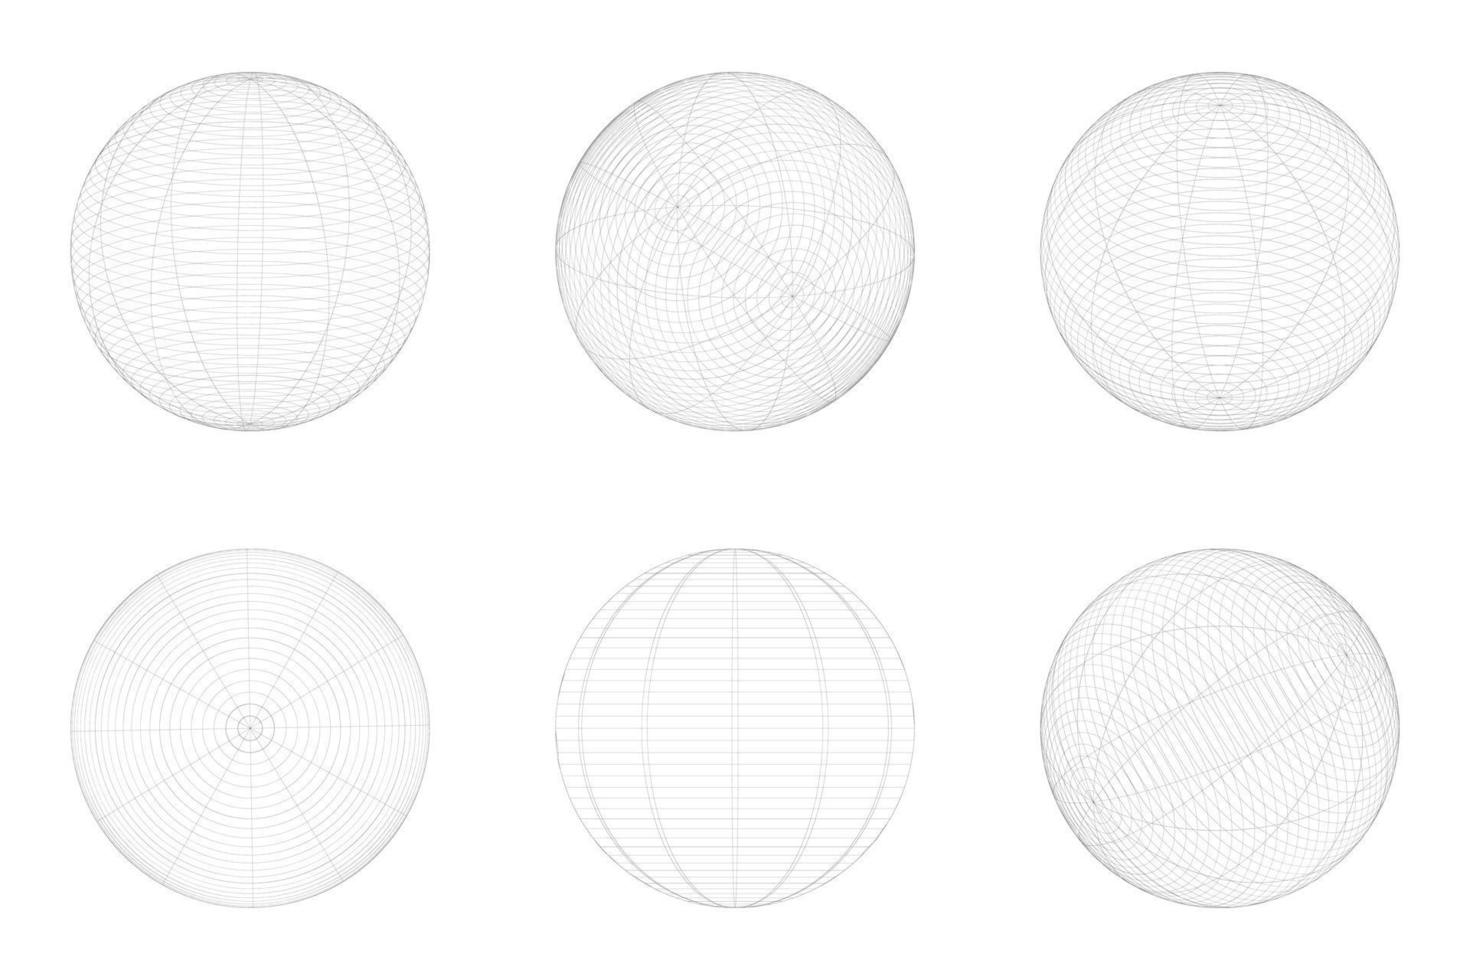 geometrisk form av sfär 3d design i teknologi stil. abstrakt cirkel vektor illustration.